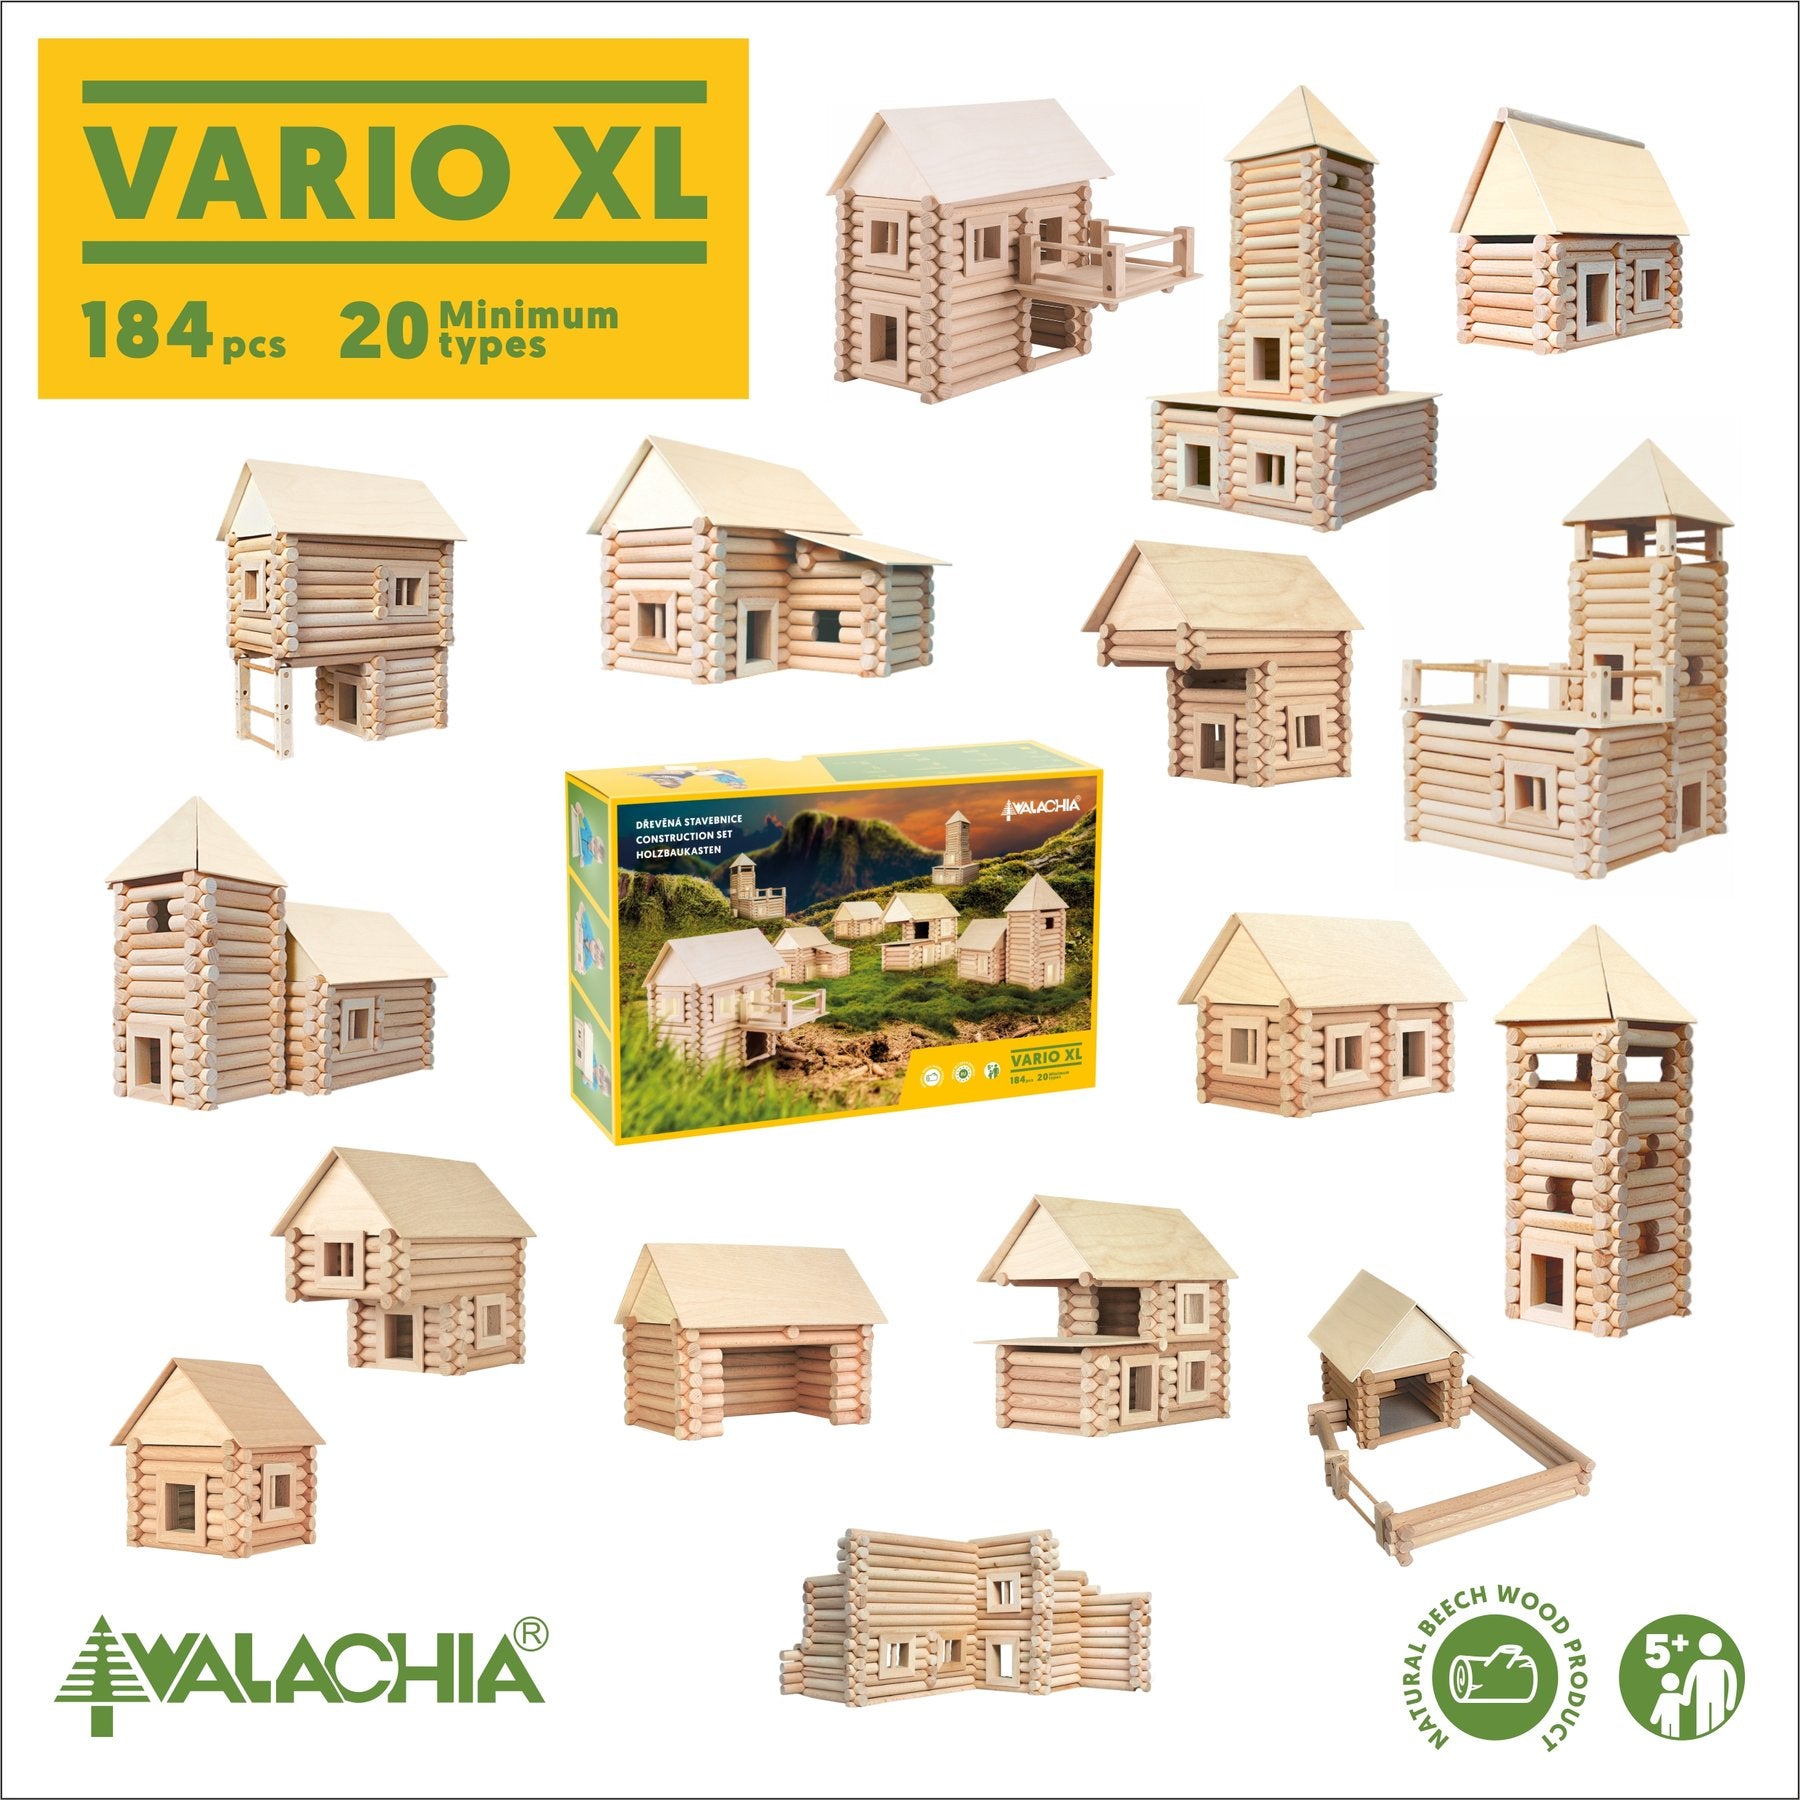 Walachia Vario XL | 184 Pieces | Children of the Wild